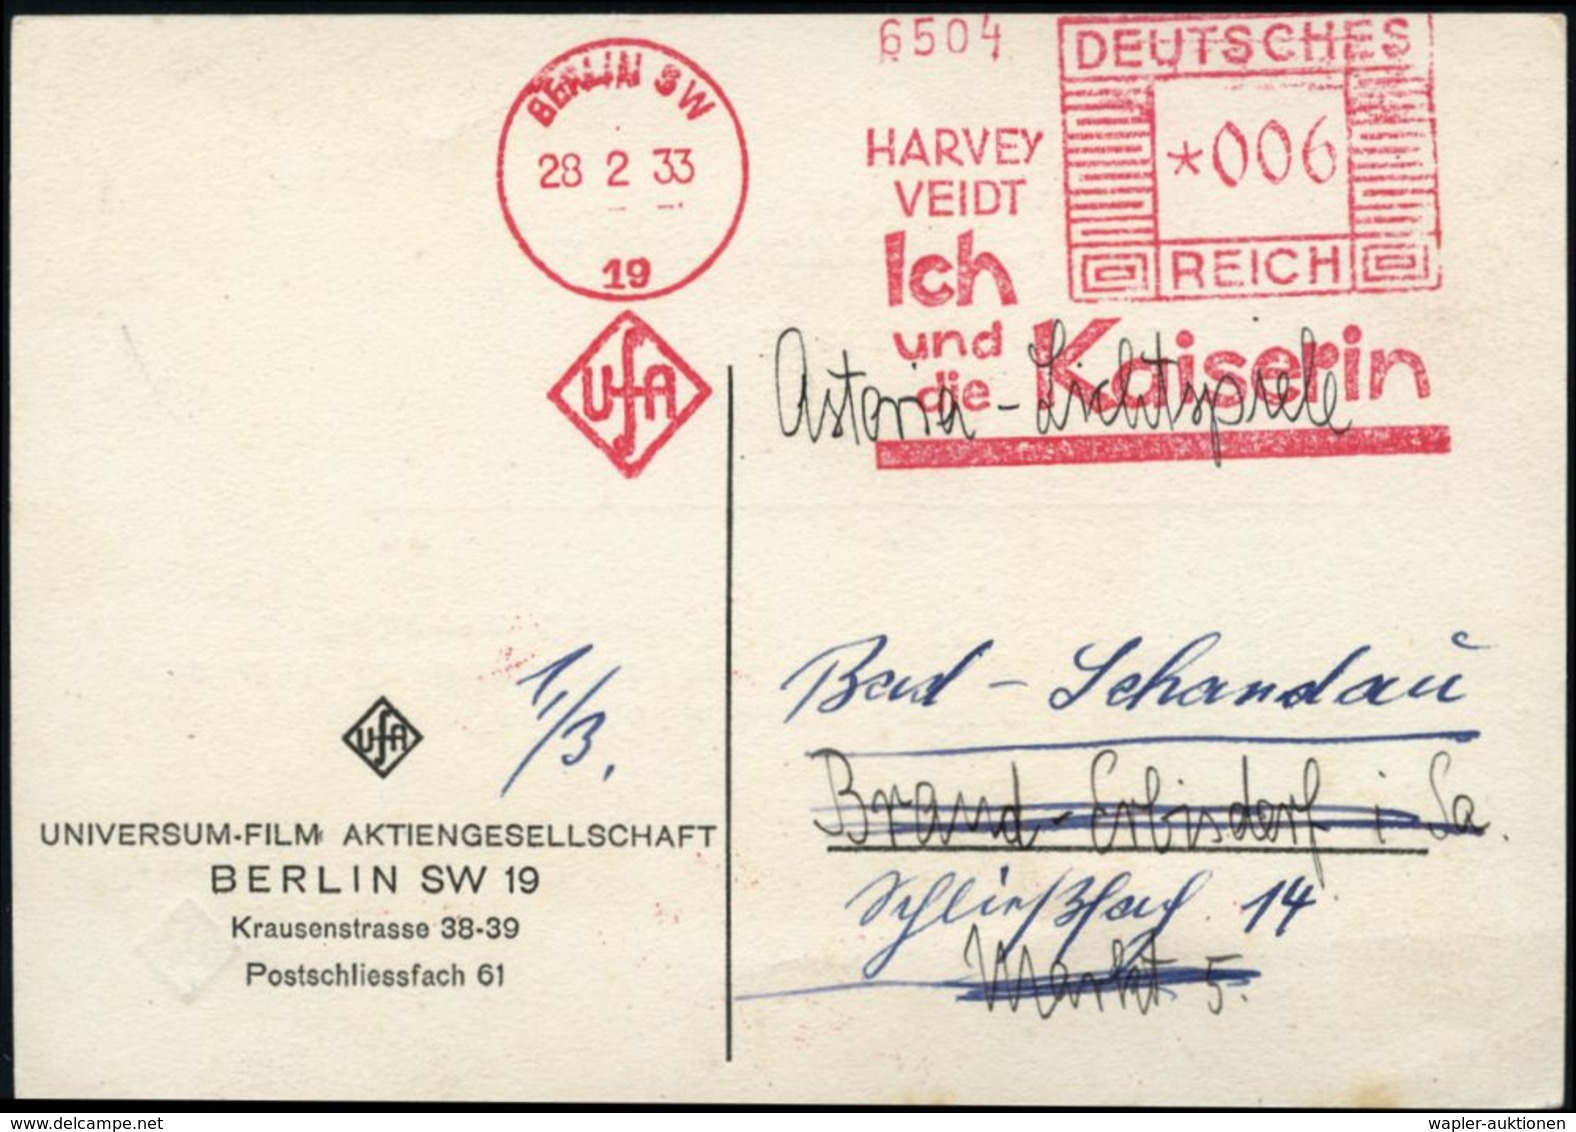 BERLIN SW/ 19/ UfA/ HARVEY/ VEIDT/ Ich/ Und/ Die Kaiserin 1933 (11.3.) Seltener AFS = UfA-Film über Napoleons Frau Eugèn - Napoleon